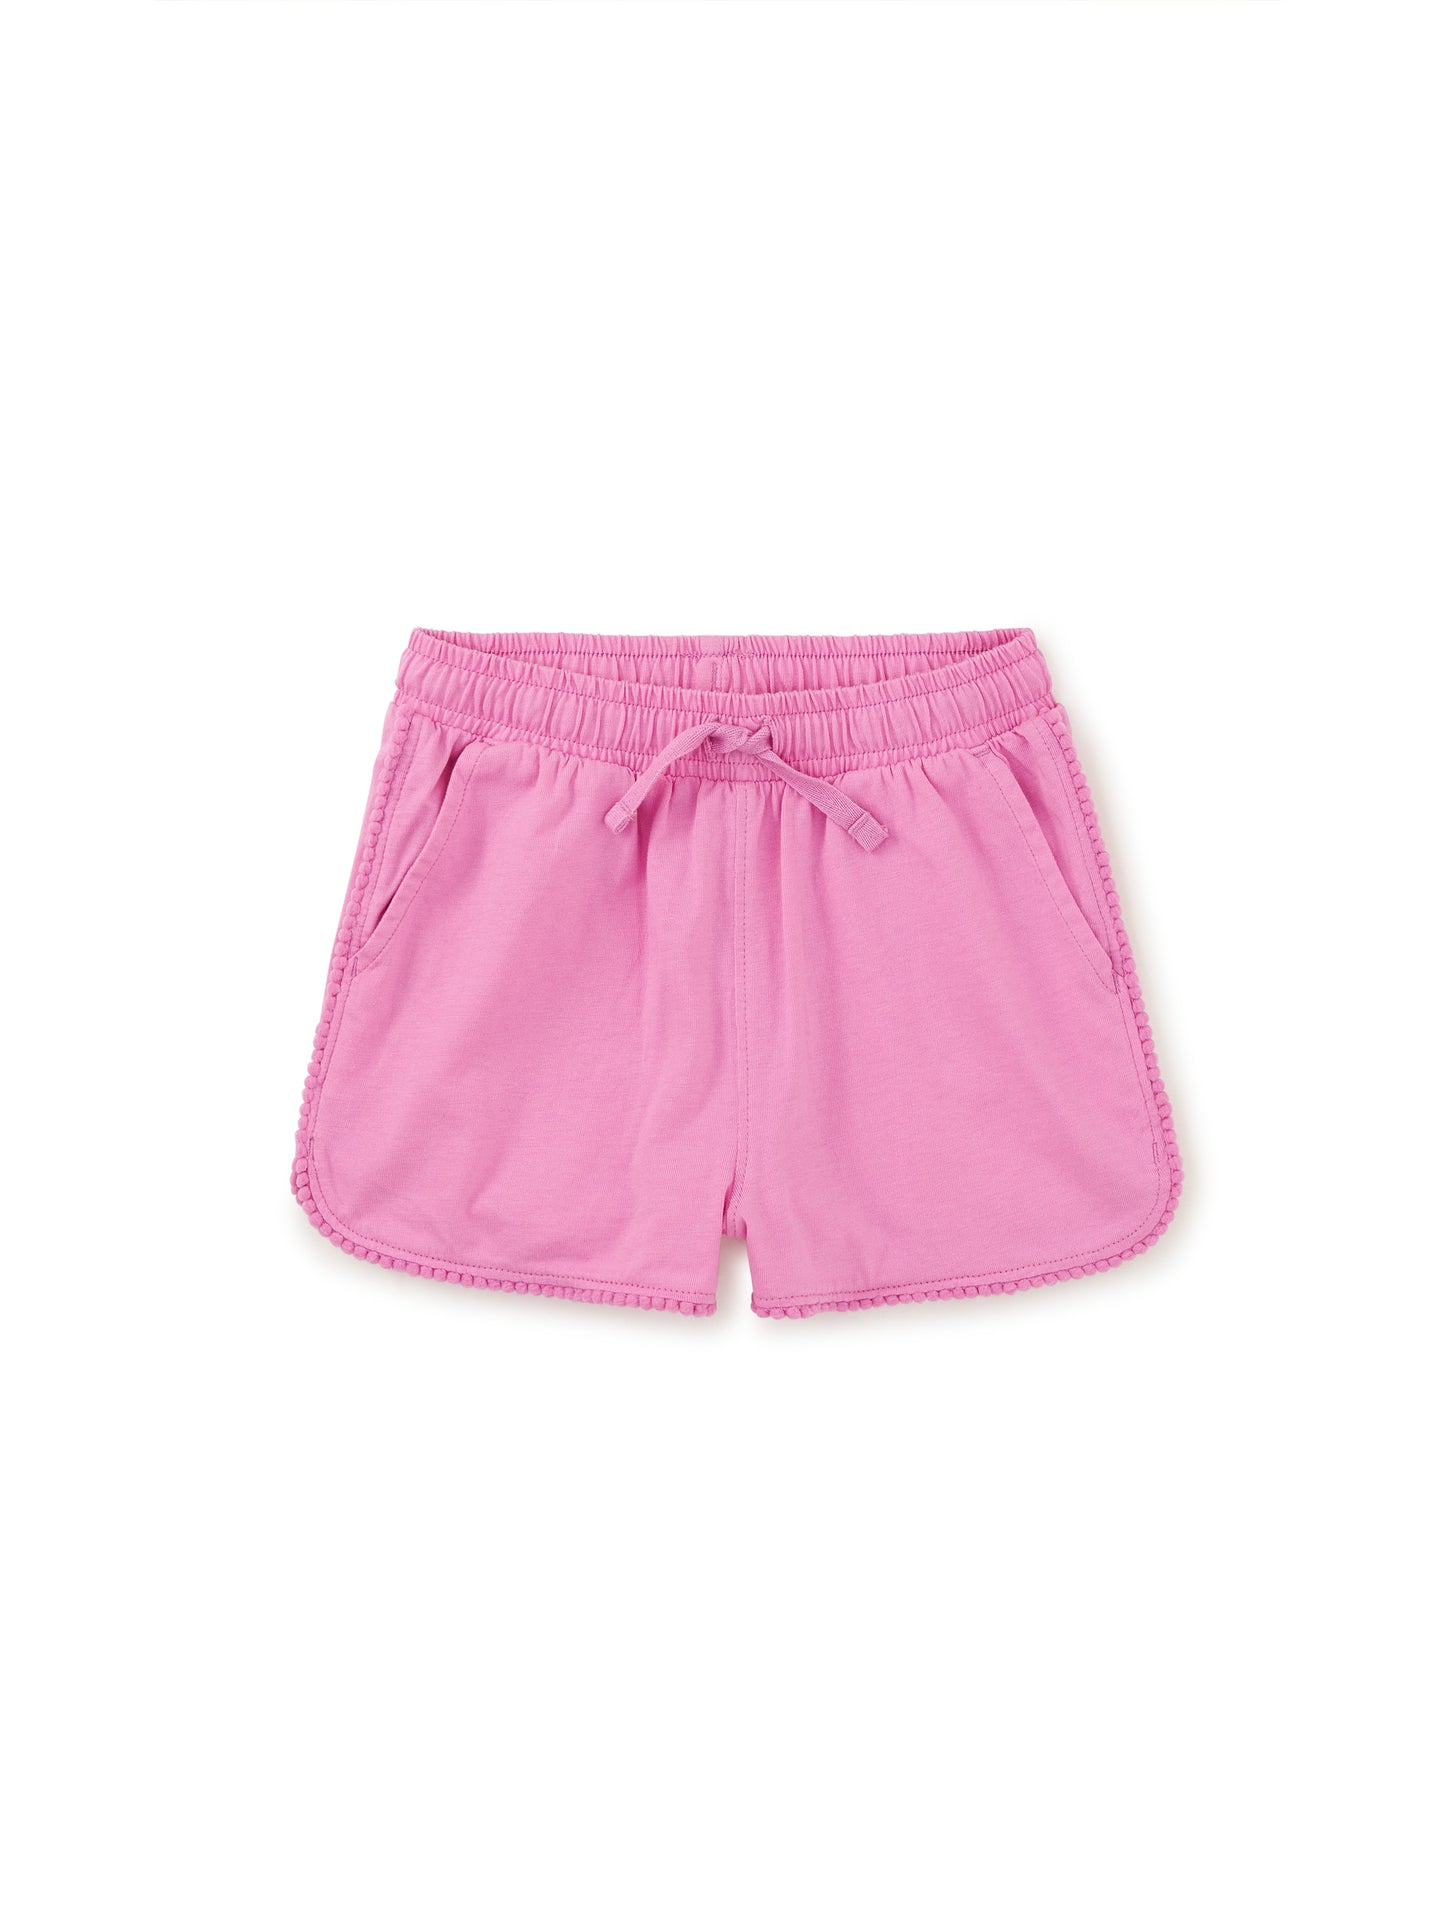 Perennial Pink Pom Pom Gym Shorts